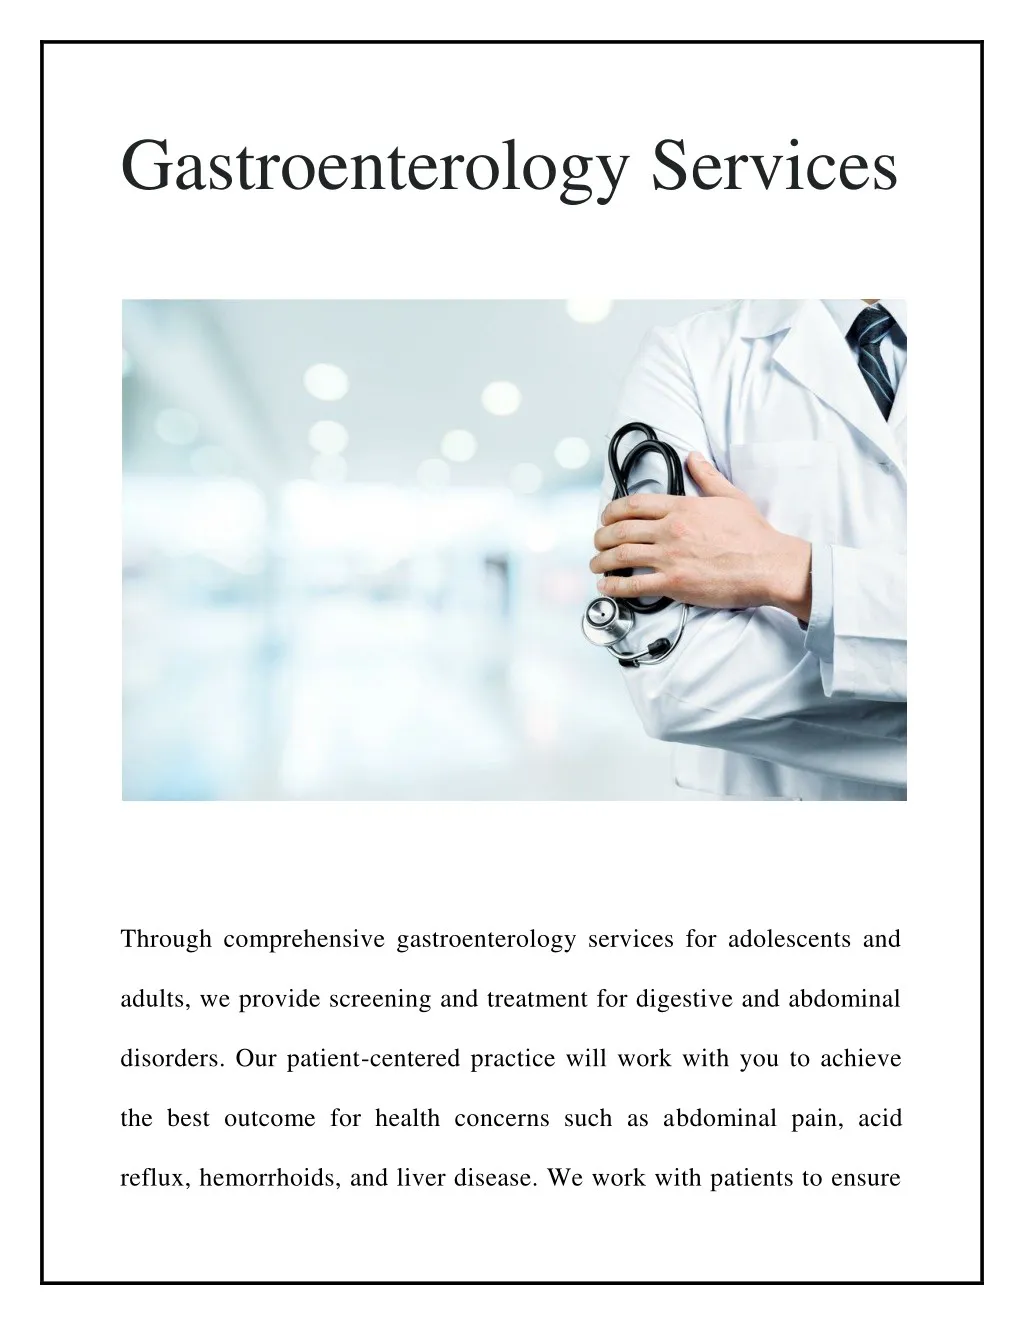 gastroenterology services